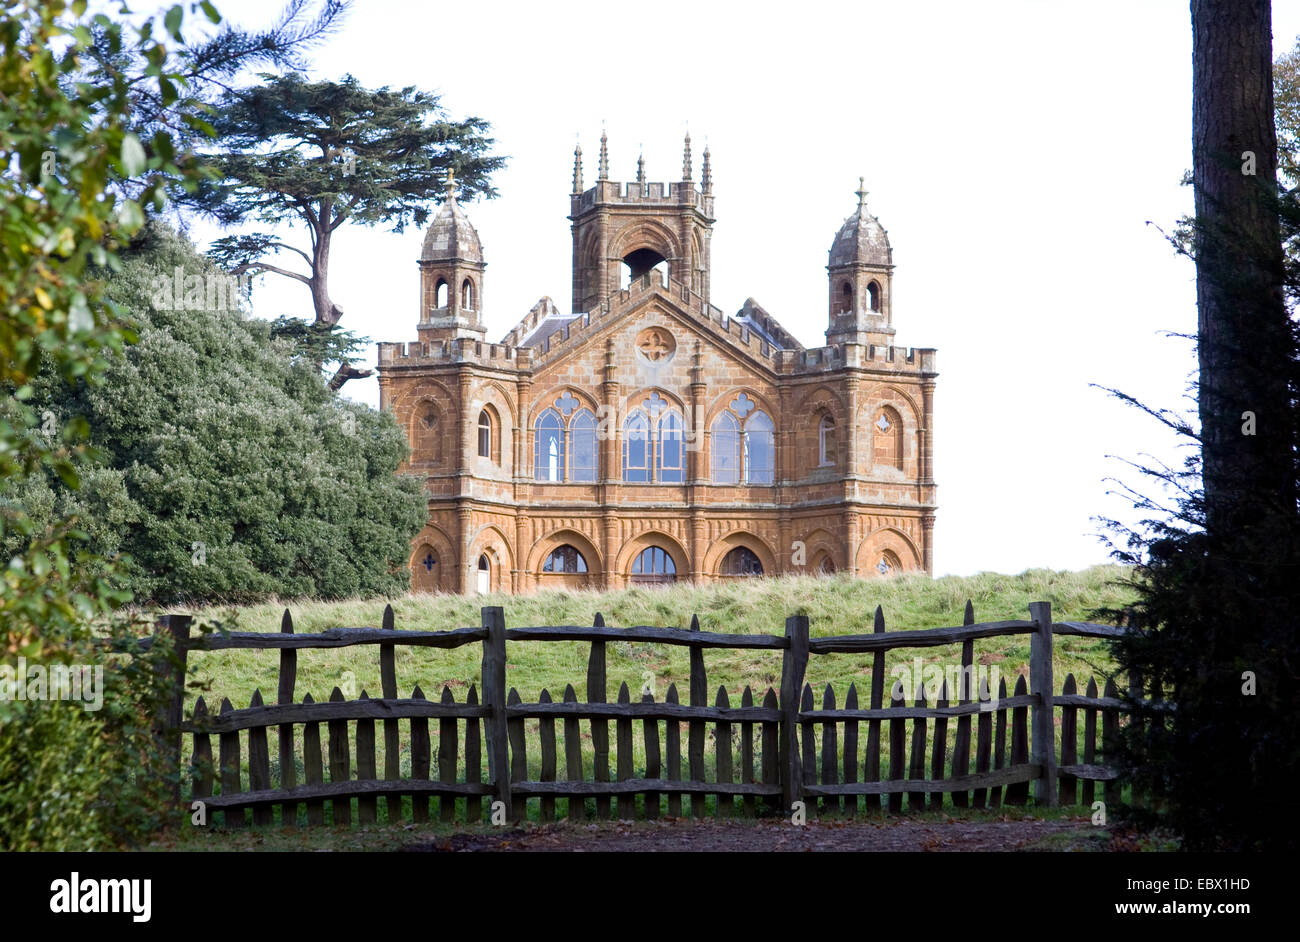 Stowe House dans le jardin anglais, Royaume-Uni, Angleterre Banque D'Images